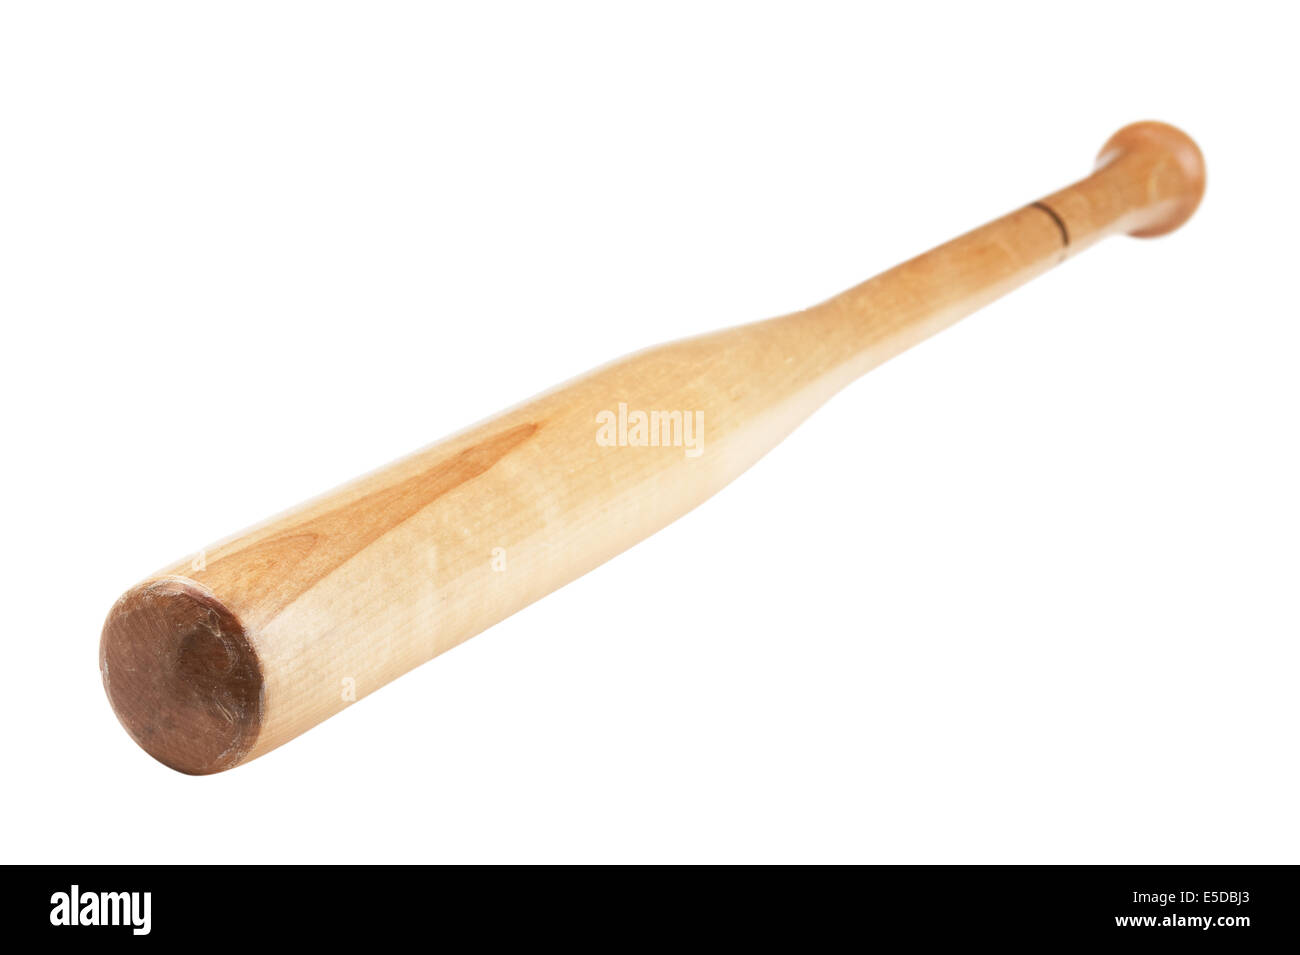 baseball bat isolated on white background Stock Photo: 72209259 - Alamy